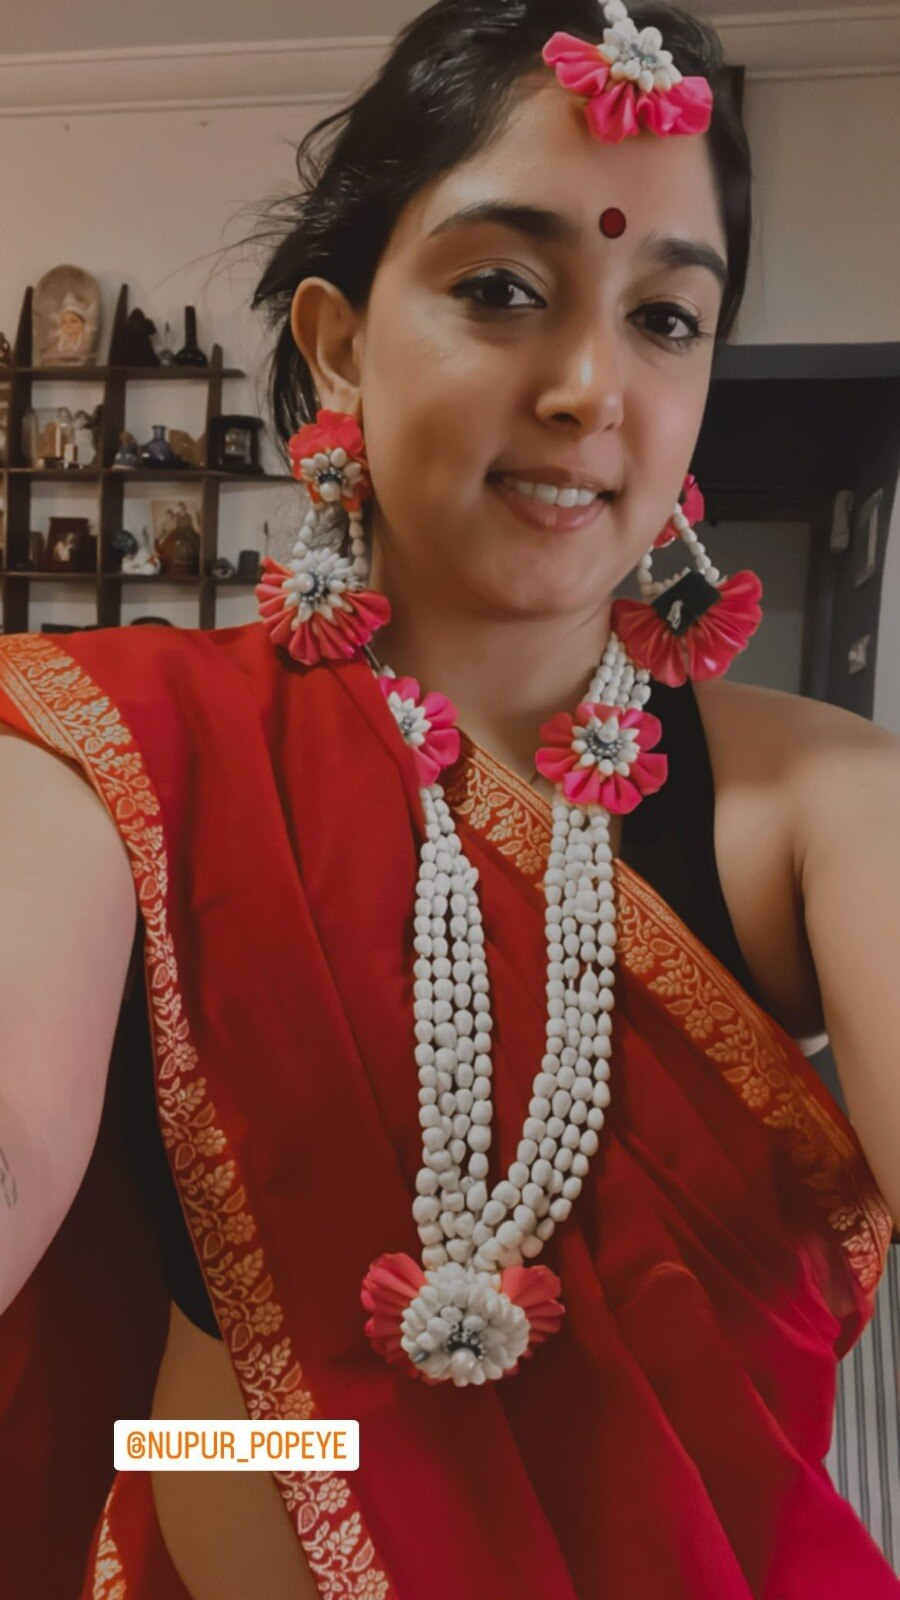 Ira Khan की शादी की रस्में शुरू, कॉटन की साड़ी पर लाल बिंदी लगाए बेहद प्यारी लगीं आमिर खान की बेटी, देखें तस्वीरें